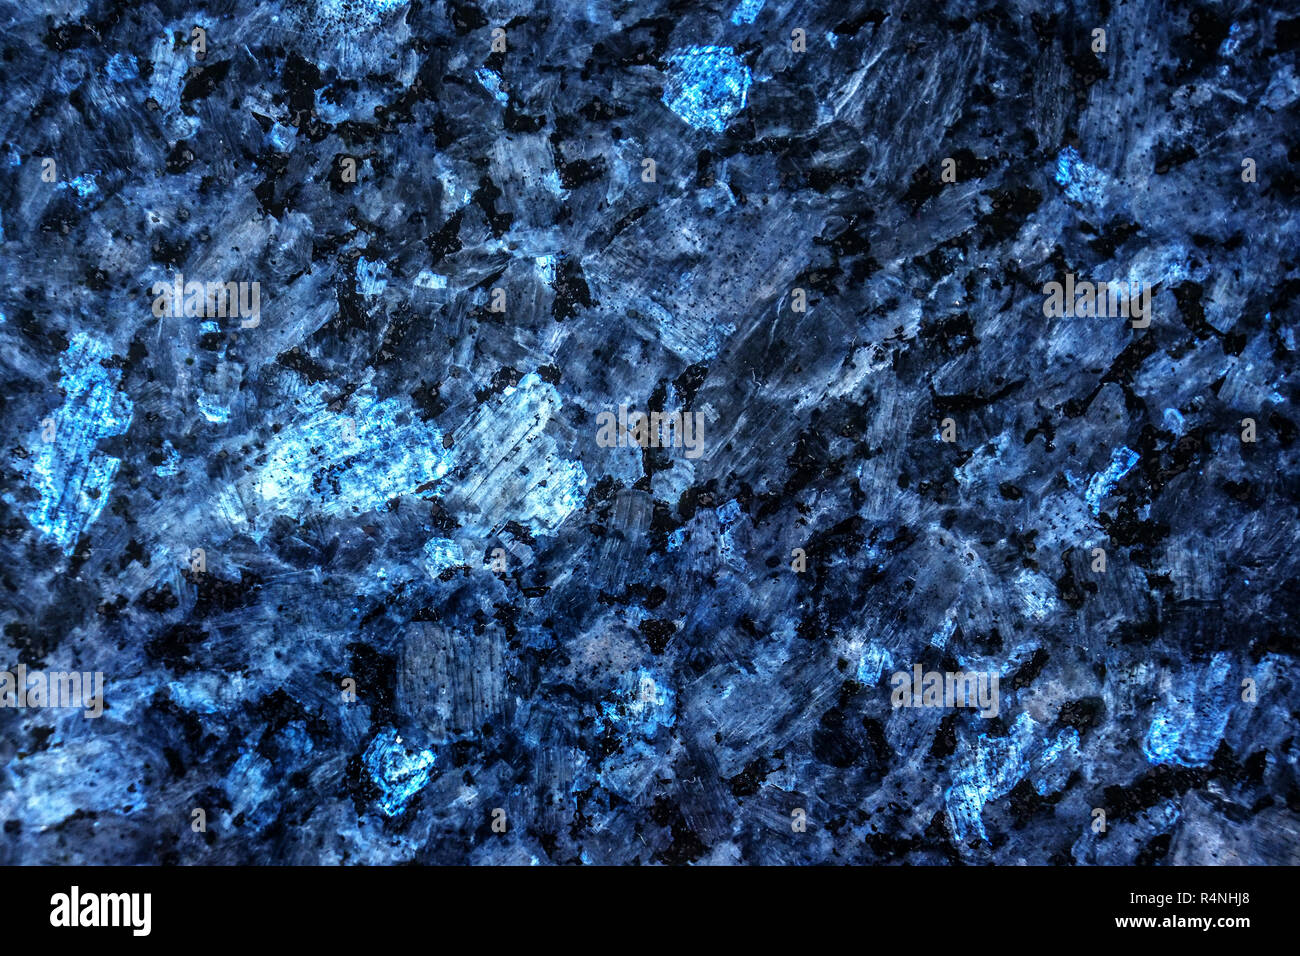 Blau Schwarz Marmor Textur Mit Einem Naturlichen Muster Konnen Als Hintergrund Fur Das Display Ihre Produkte Bearbeiten Oder Verwendet Werden Stockfotografie Alamy